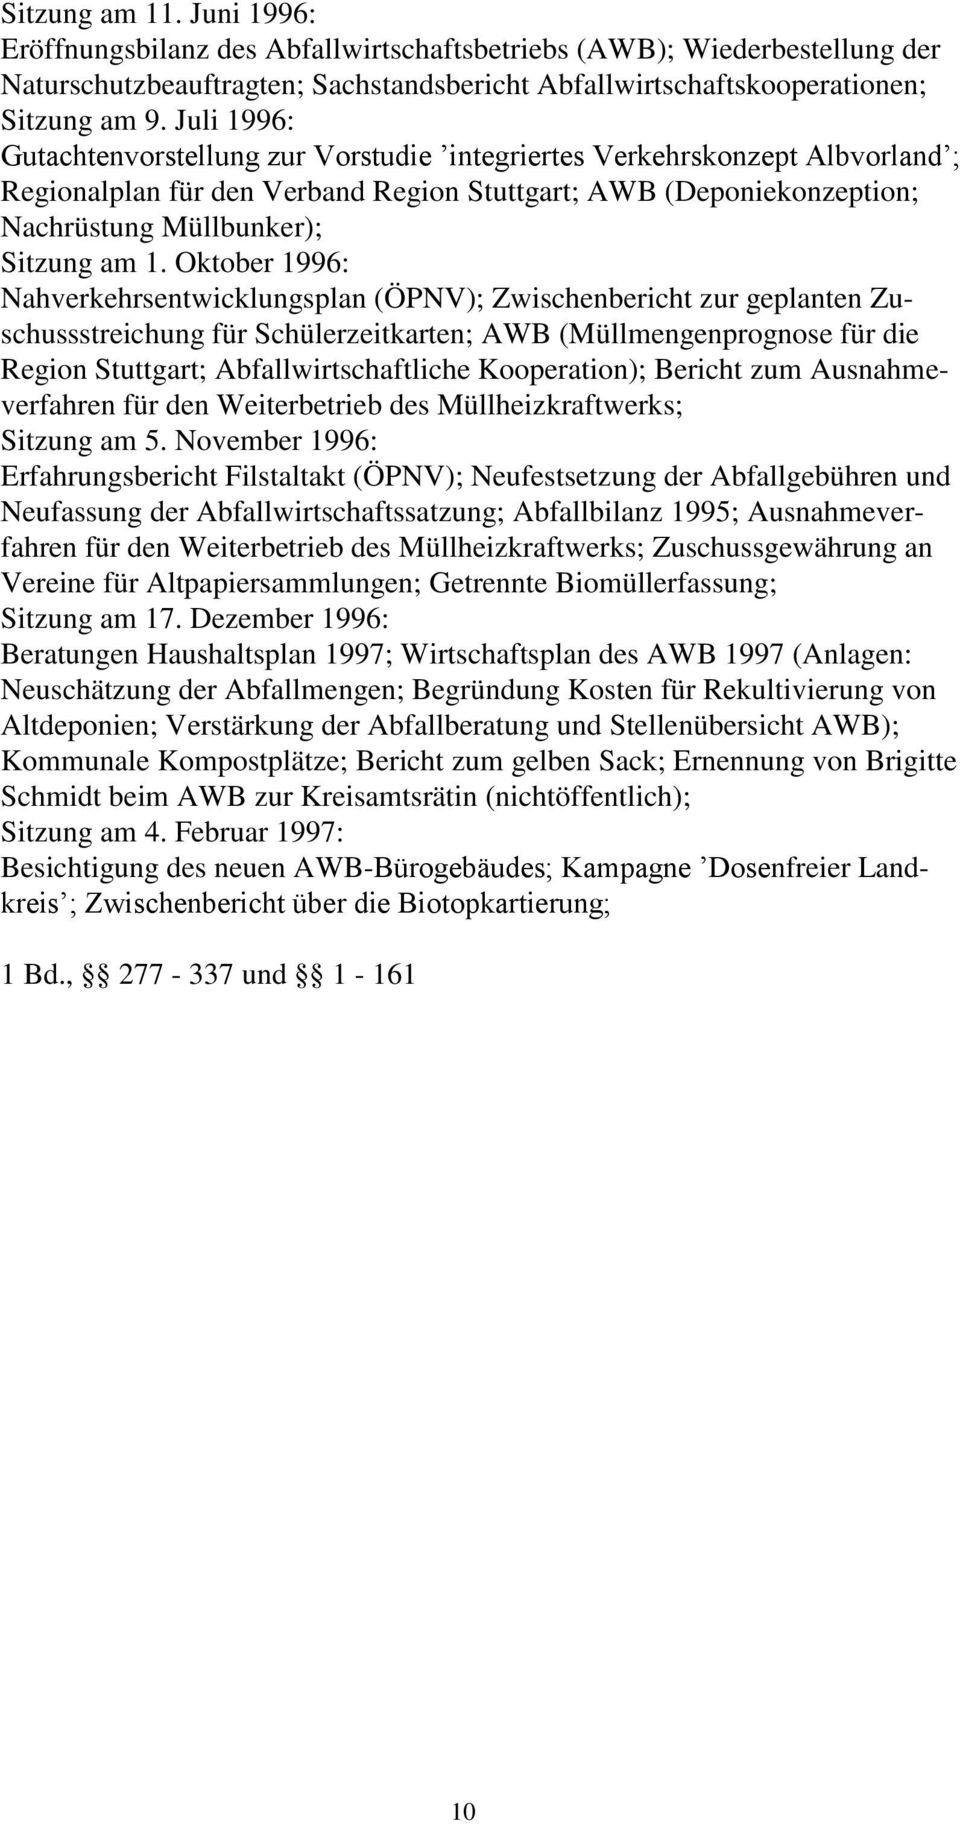 Oktober 1996: Nahverkehrsentwicklungsplan (ÖPNV); Zwischenbericht zur geplanten Zuschussstreichung für Schülerzeitkarten; AWB (Müllmengenprognose für die Region Stuttgart; Abfallwirtschaftliche